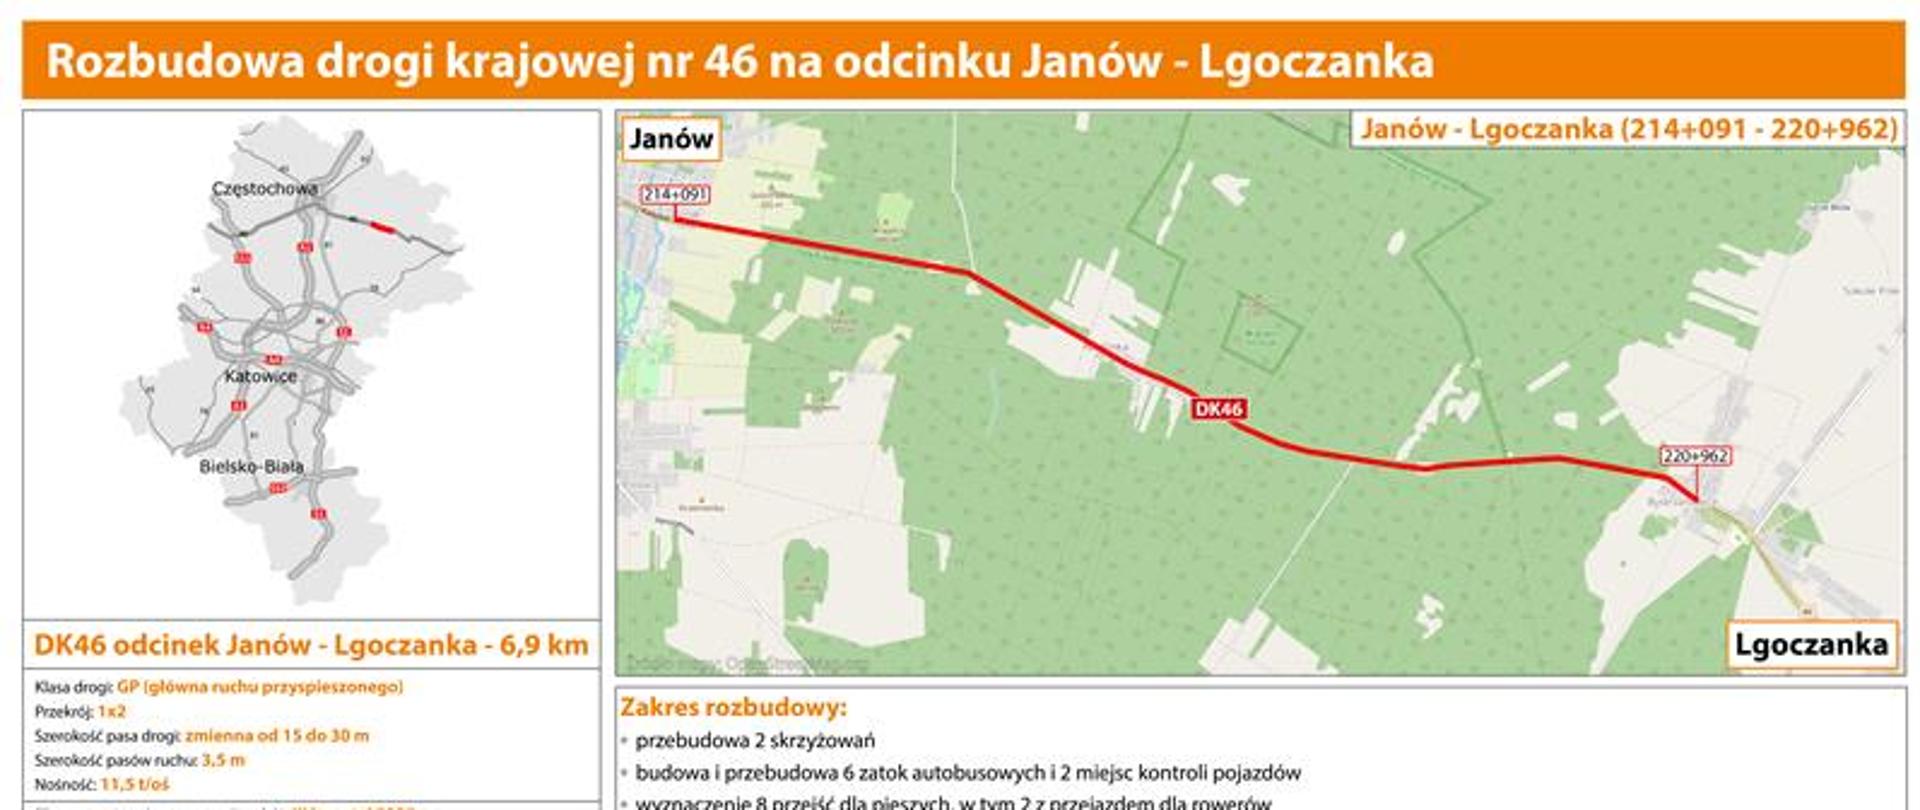 Mapa przedstawiająca planowany przebieg rozbudowy DK46 na odcinku Janów - Lgoczanka